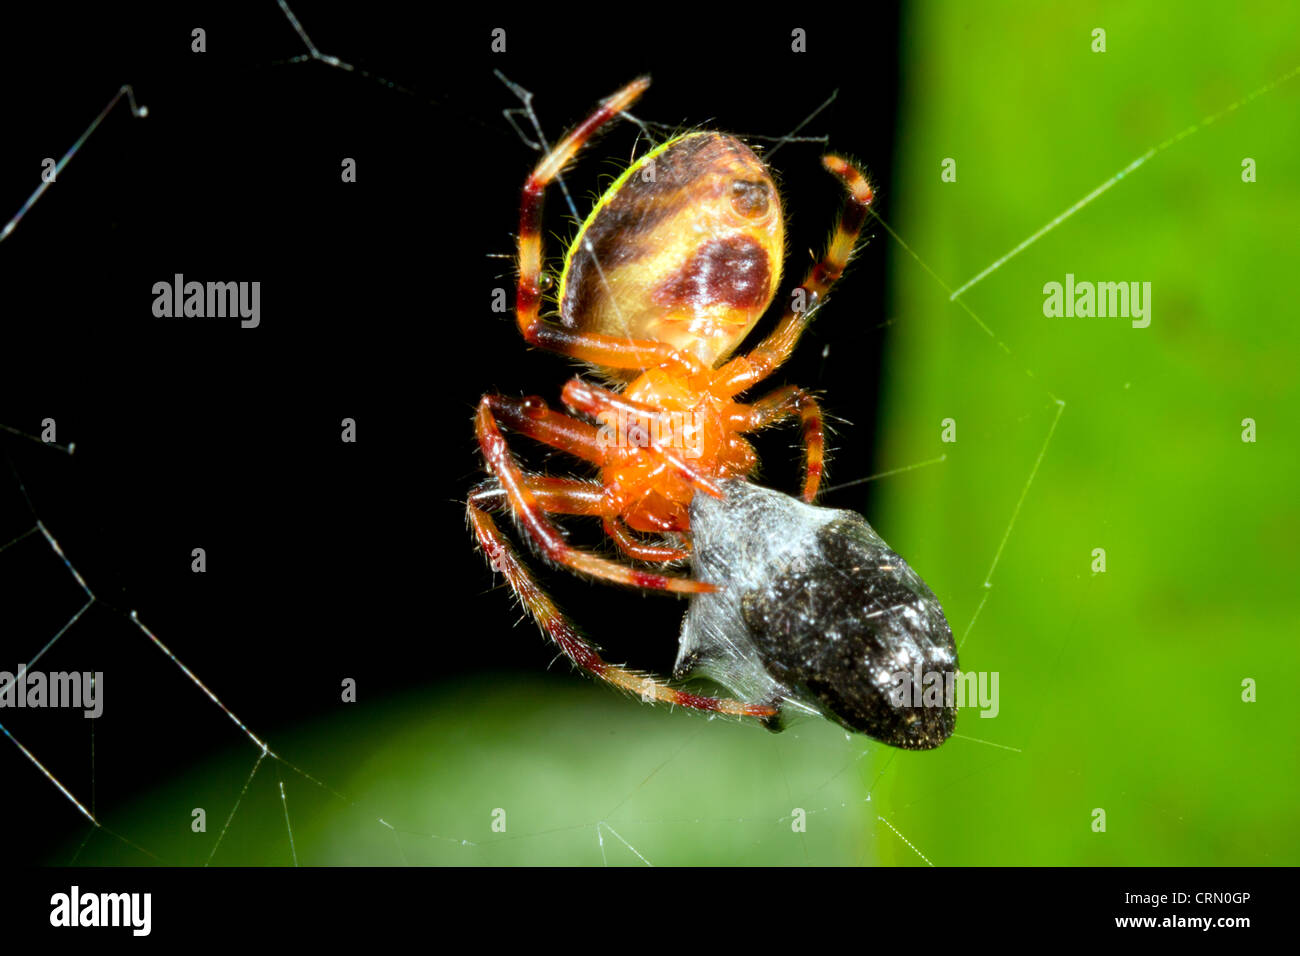 Tropical orb-web spider feeding on a prey item wrapped in silk, Ecuador Stock Photo